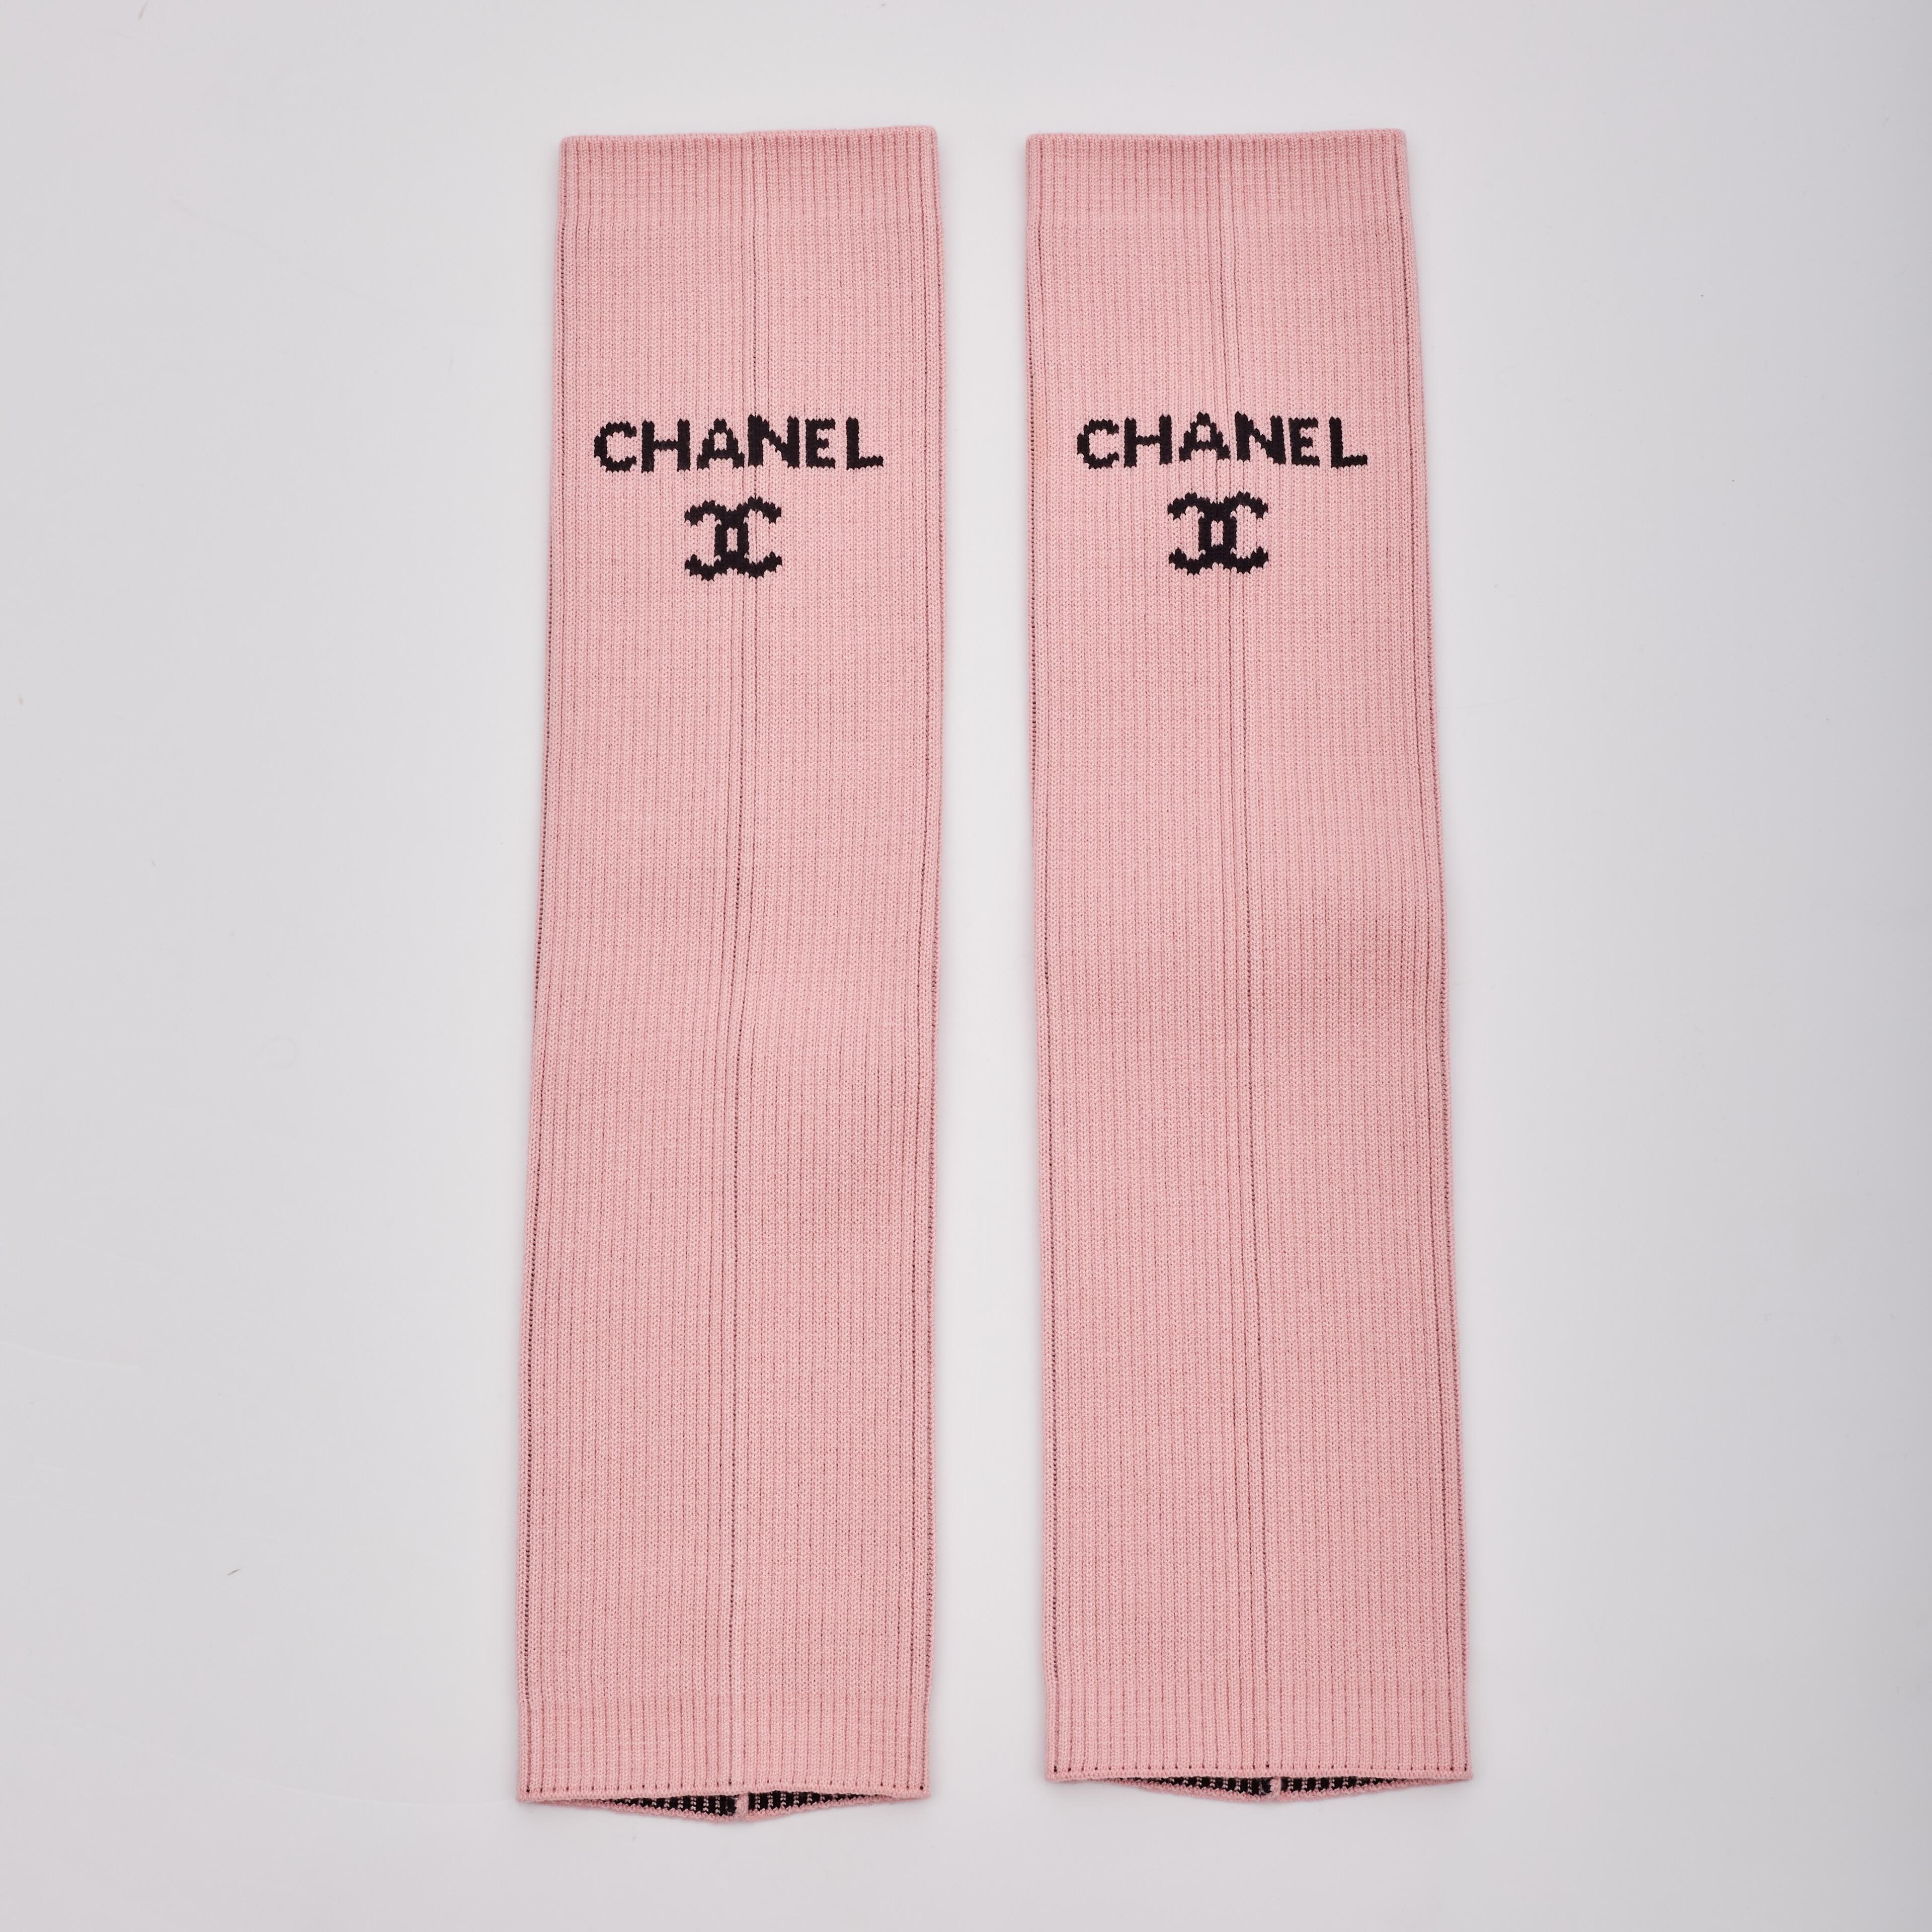 Wir präsentieren die begehrten Chanel Beinwärmer in Rosa, die Teil der limitierten Kollektion der Chanel Cruise Linie 2024 sind. Dieses Stück wurde bei der LA Hollywood Cruise Runway Fashion Show gezeigt, und zwar in den Looks 26, 29, 30 und 34.

53